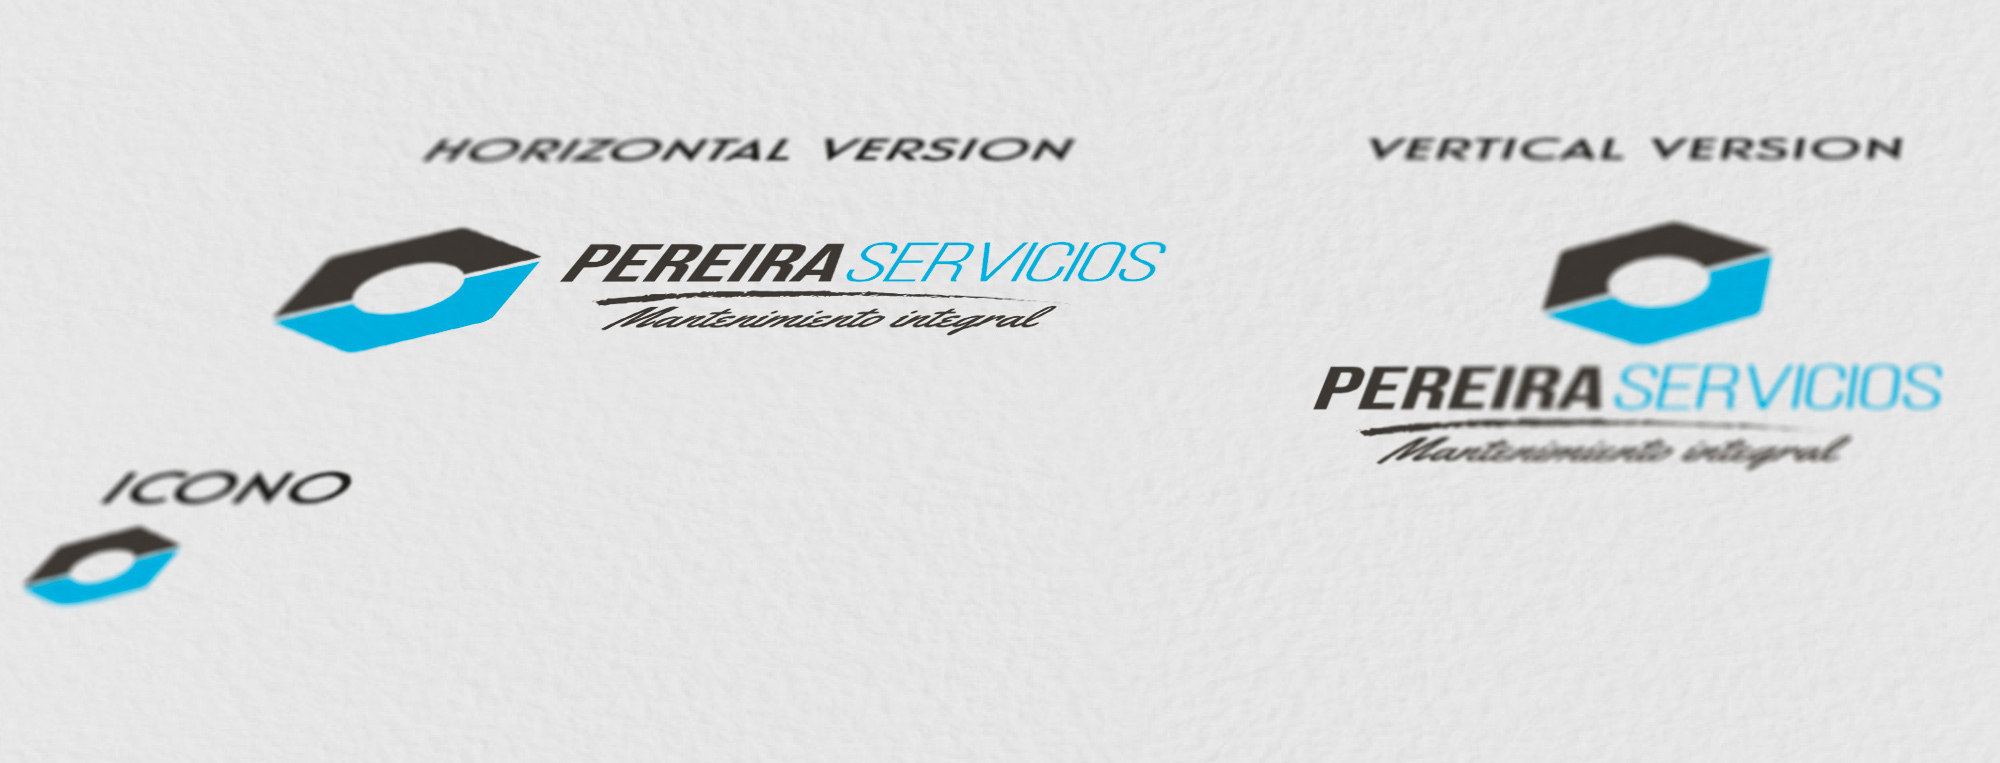 Pereira servicios -  Logo sizes